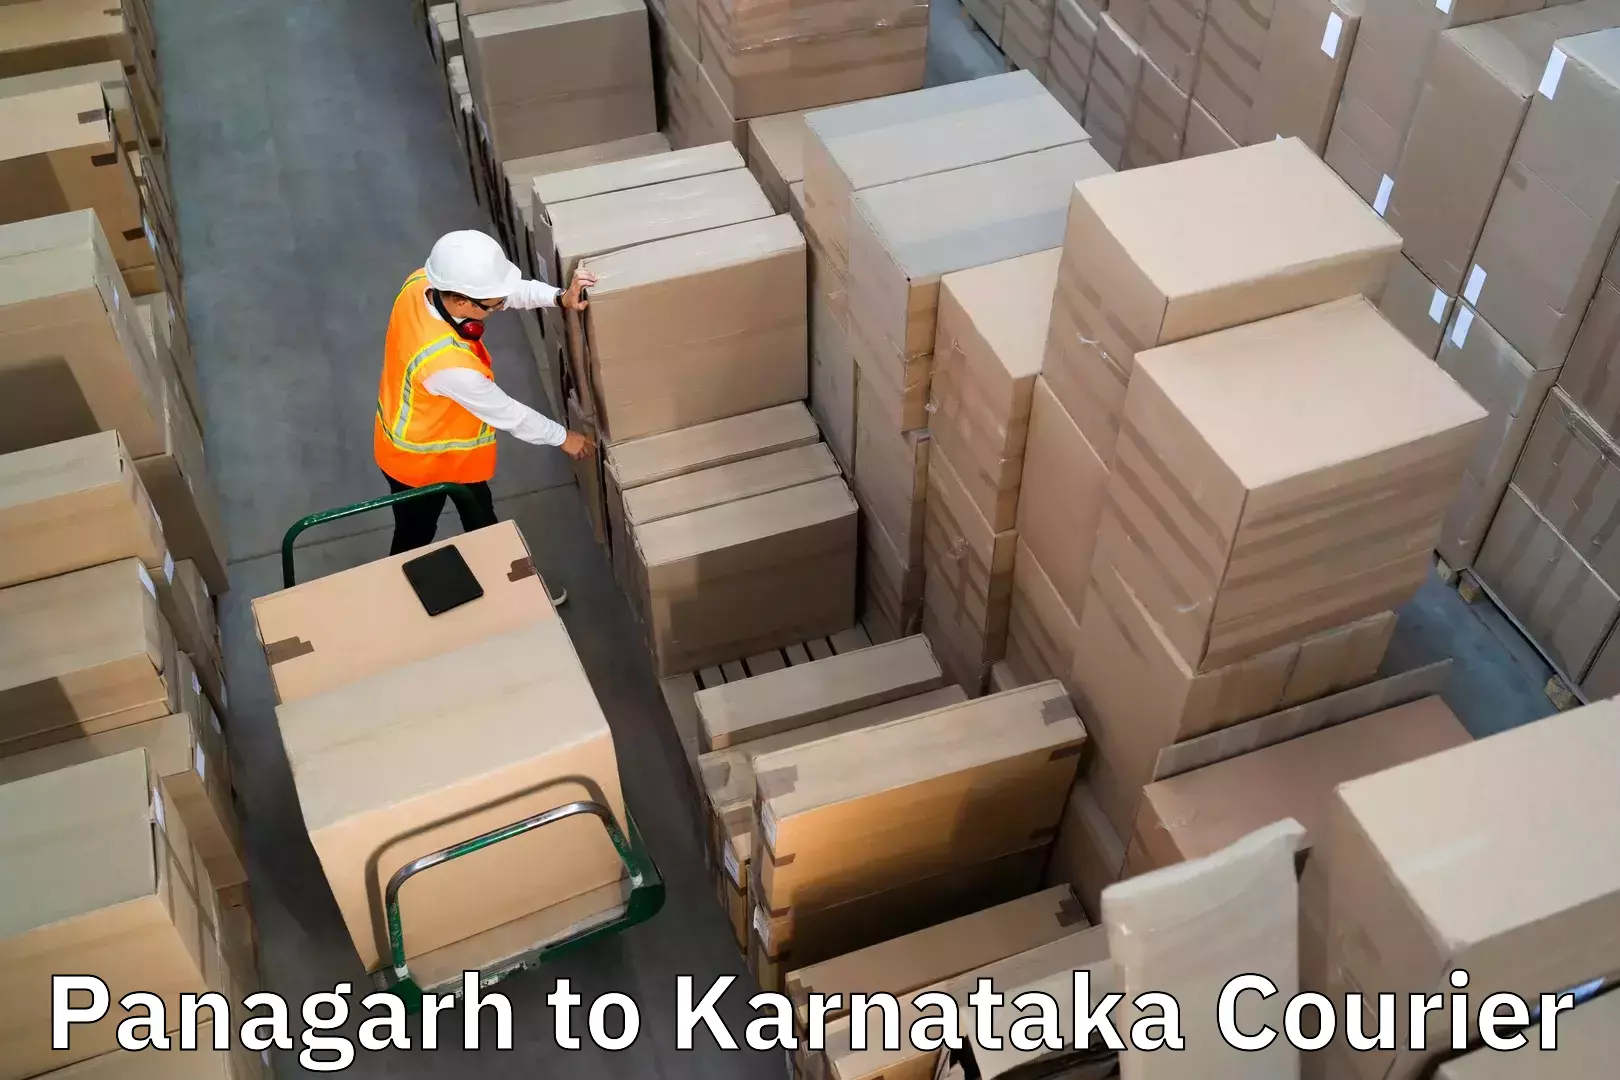 Baggage courier strategy Panagarh to Kanjarakatte